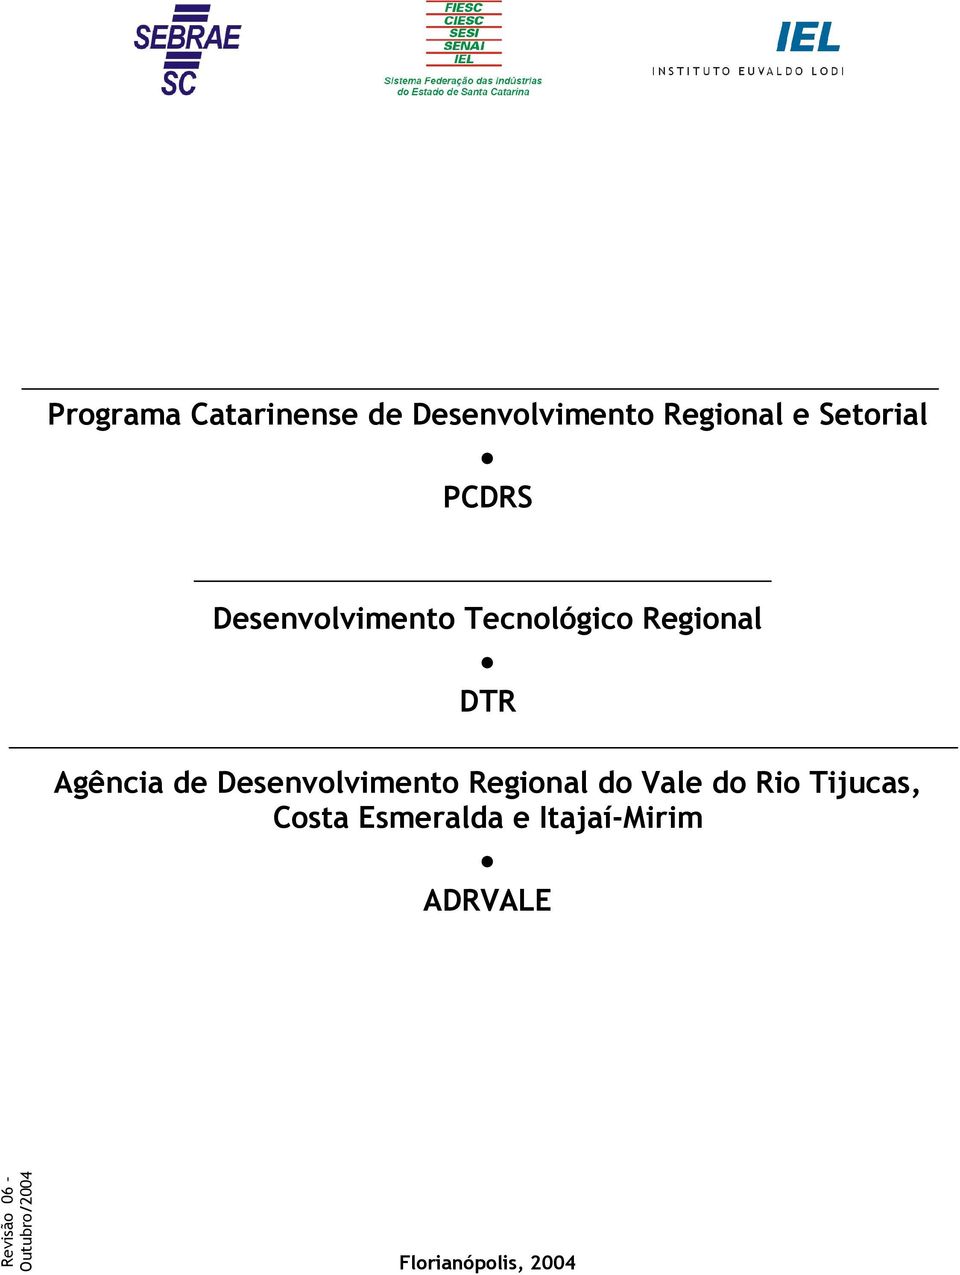 Desenvolvimento Regional do Vale do Rio Tijucas, Costa